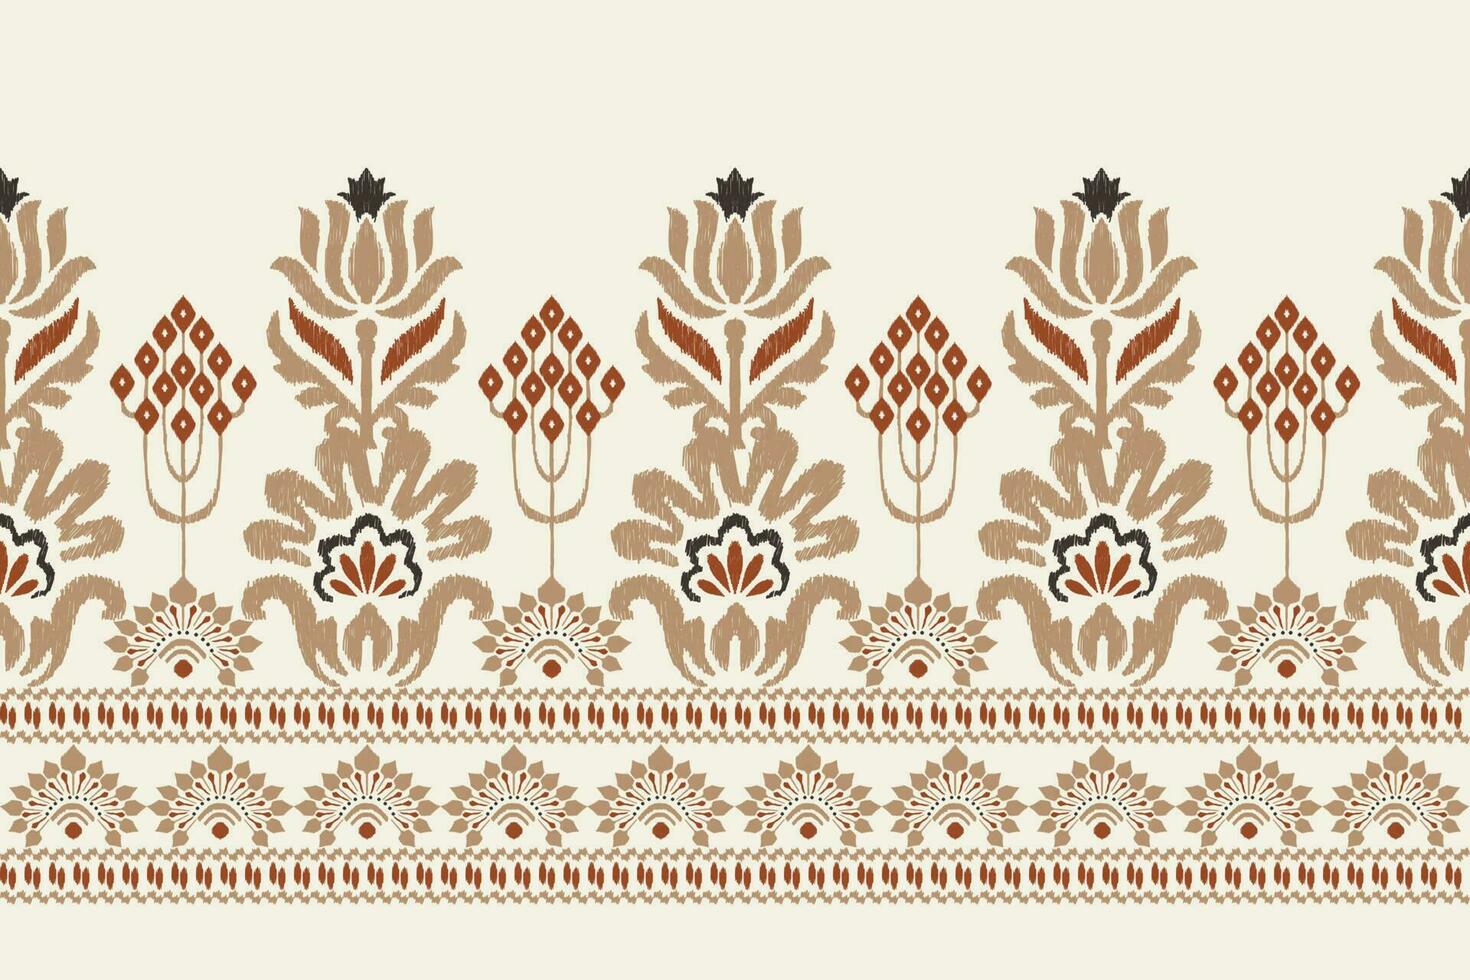 Ikat Blumen- Paisley Stickerei auf Weiß hintergrund.ikat ethnisch orientalisch Muster traditionell.aztekisch Stil abstrakt Vektor illustration.design zum Textur, Stoff, Kleidung, Verpackung, Dekoration, Sarong, Druck